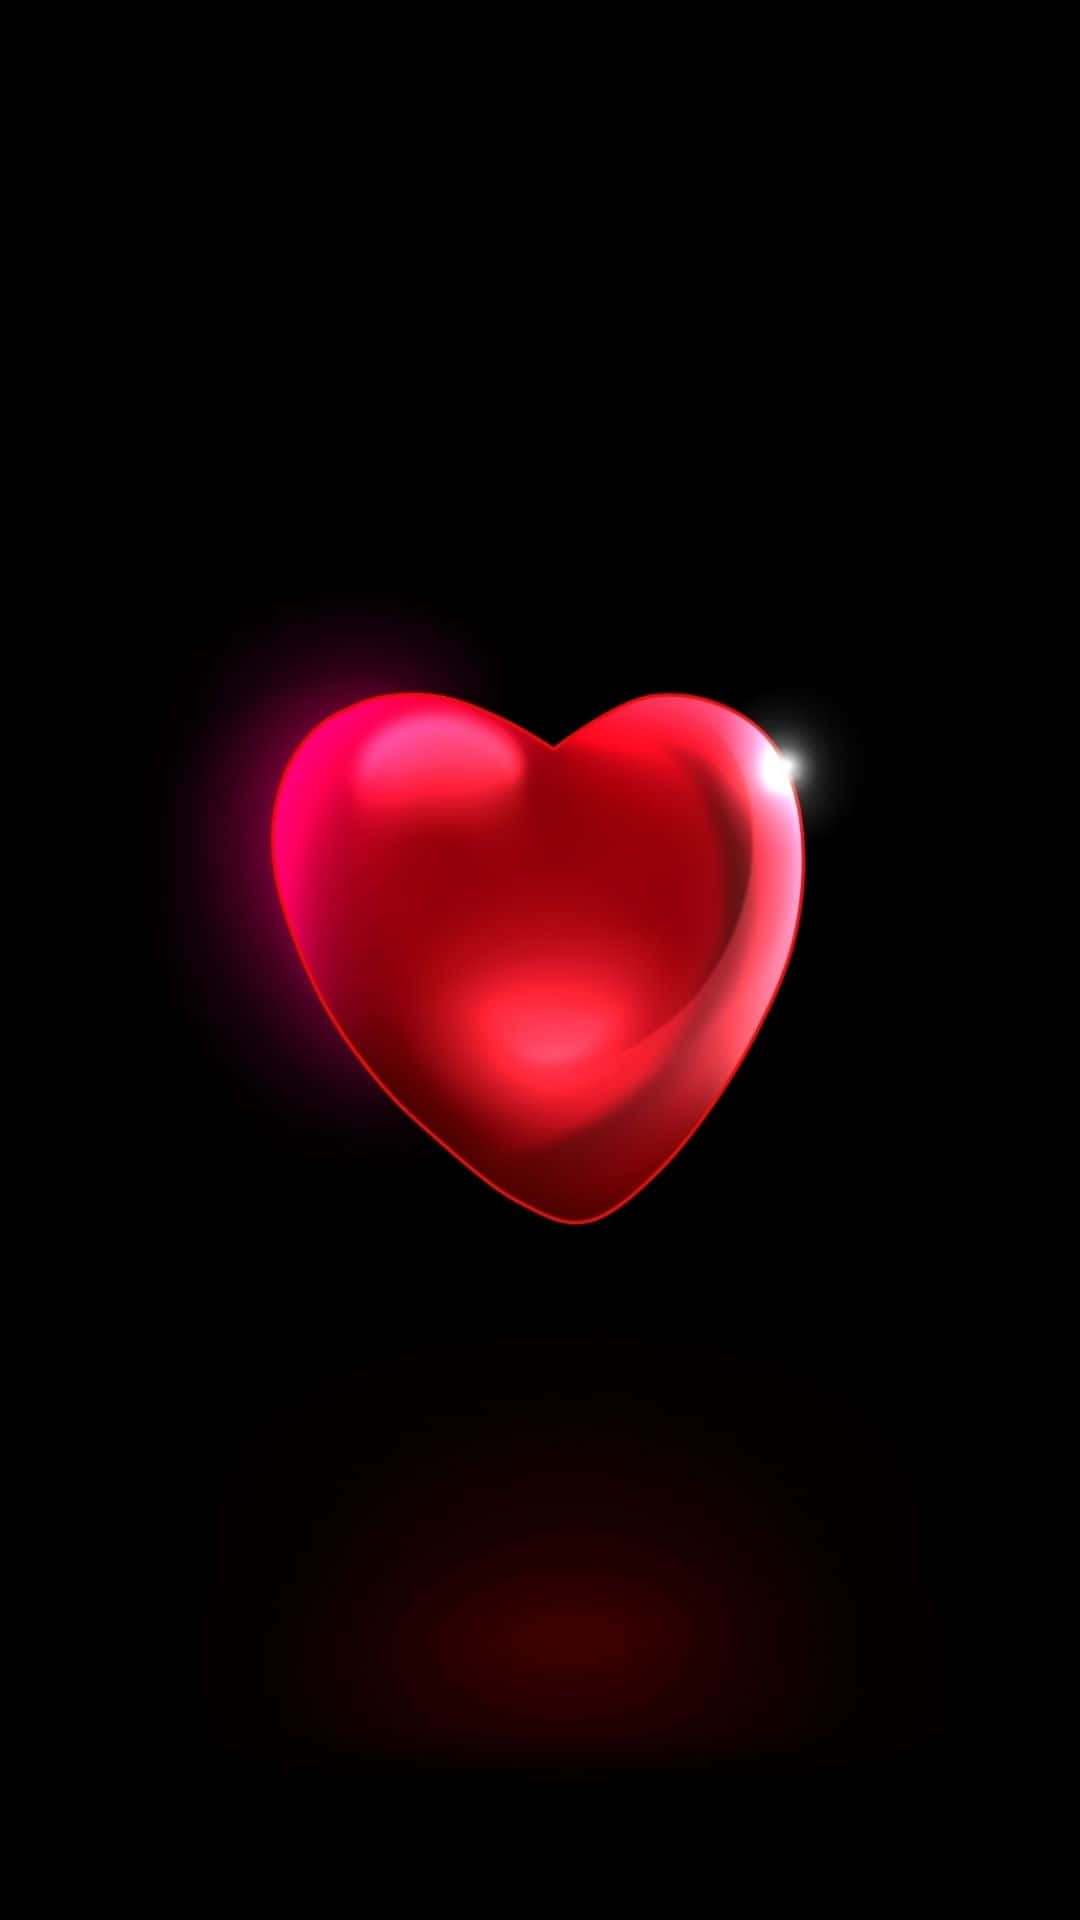 Visadin Kärlek Med En Vacker Röd Hjärta! (context: Dator- Eller Mobilbakgrund) Wallpaper